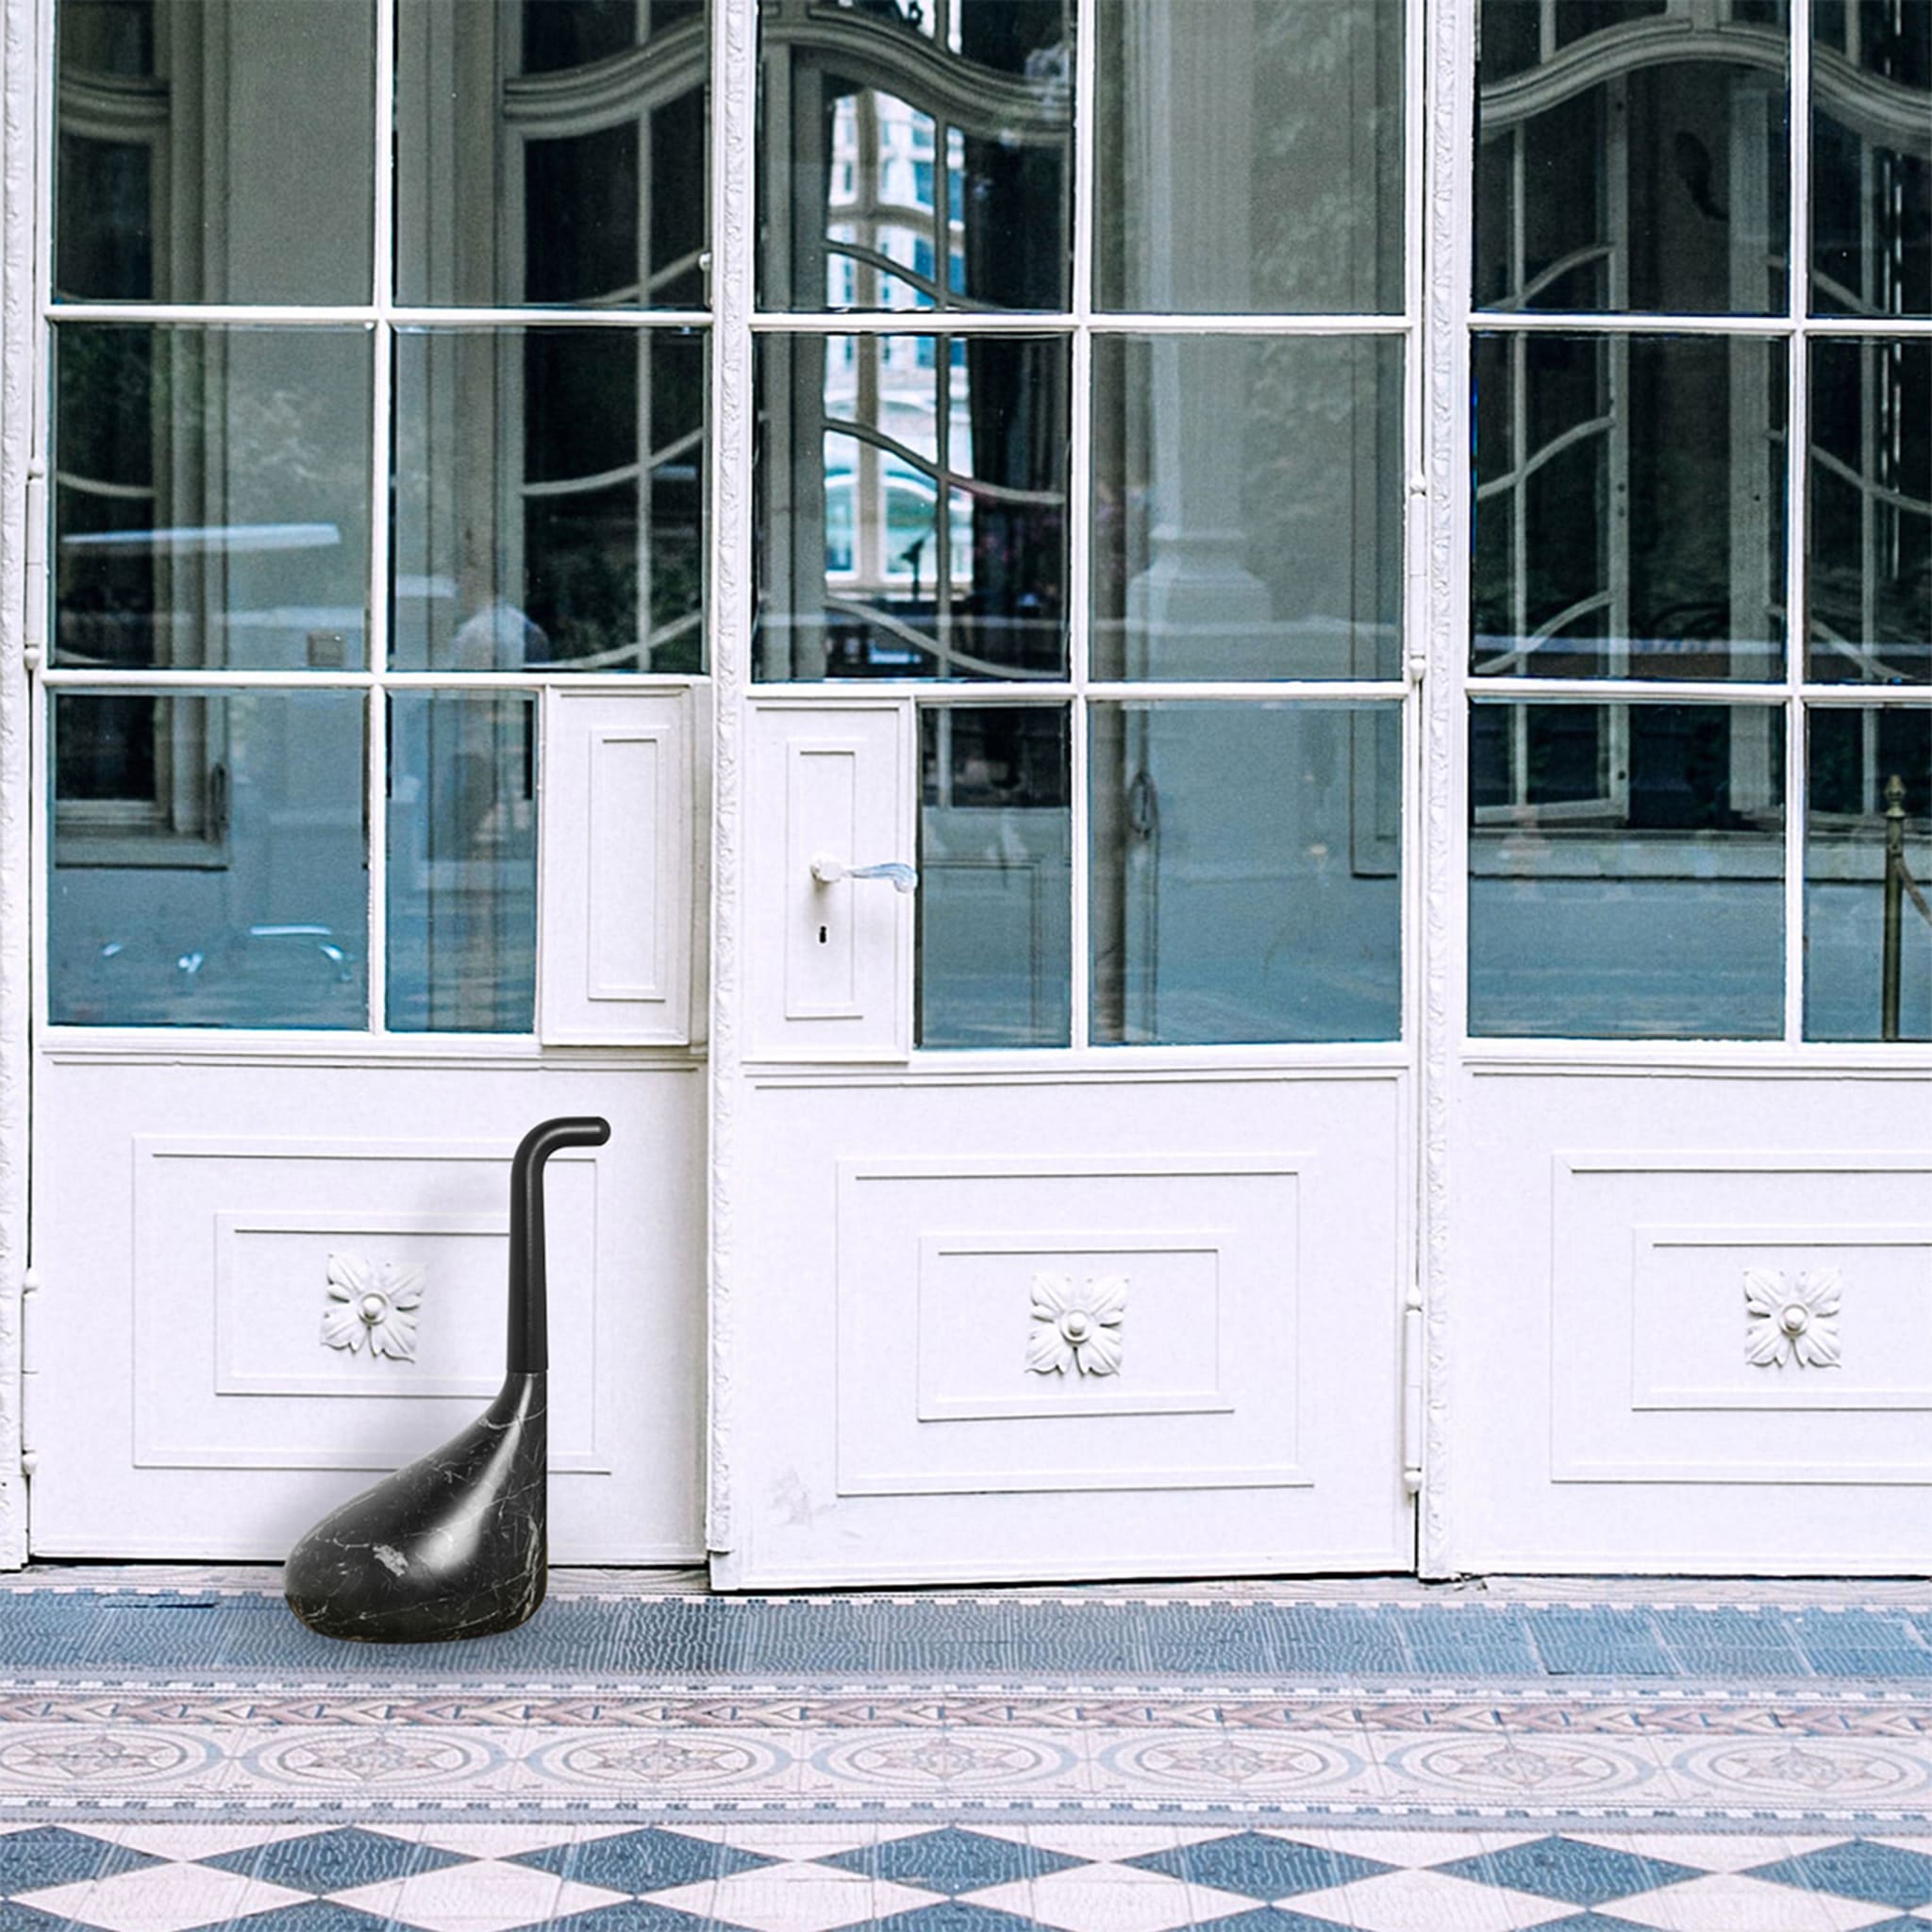 Nessie Black Doorstop by Luca Nichetto - Alternative view 4